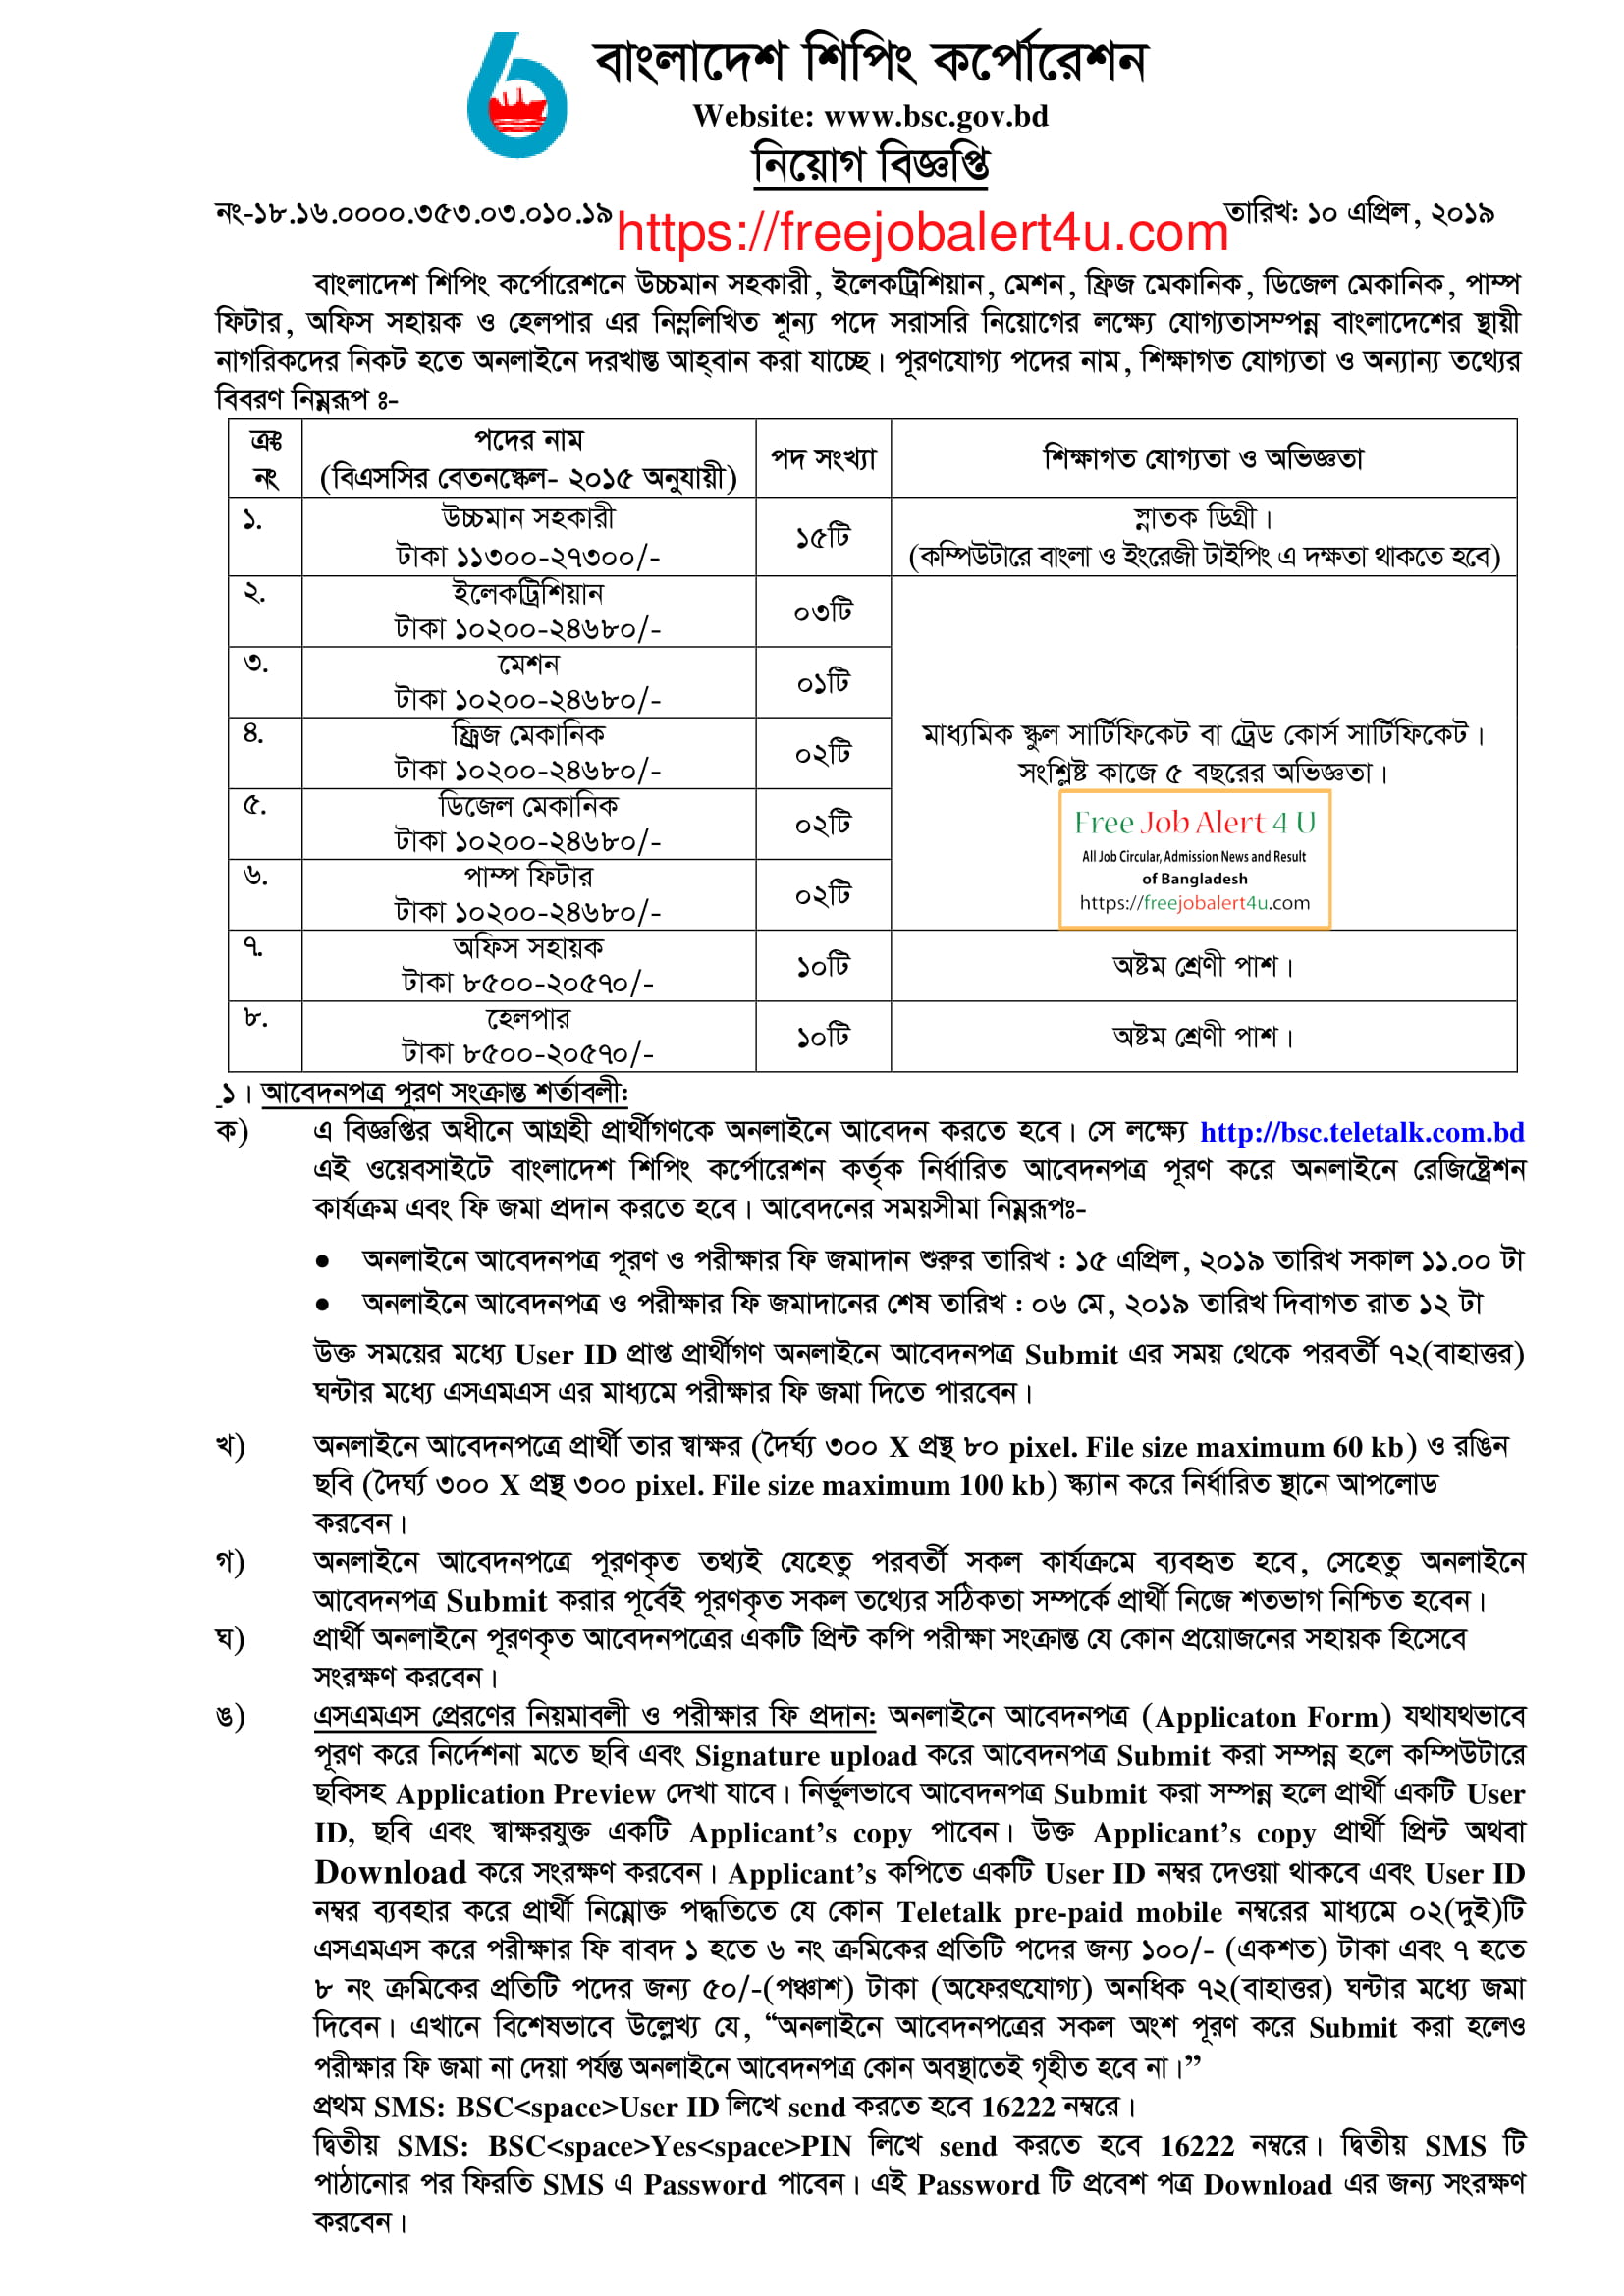 বাংলাদেশ শিপিং কর্পোরেশন নিয়োগ বিজ্ঞপ্তি ২০১৯ (Bangladesh Shipping Corporation (BSC) Job Circular 2019)